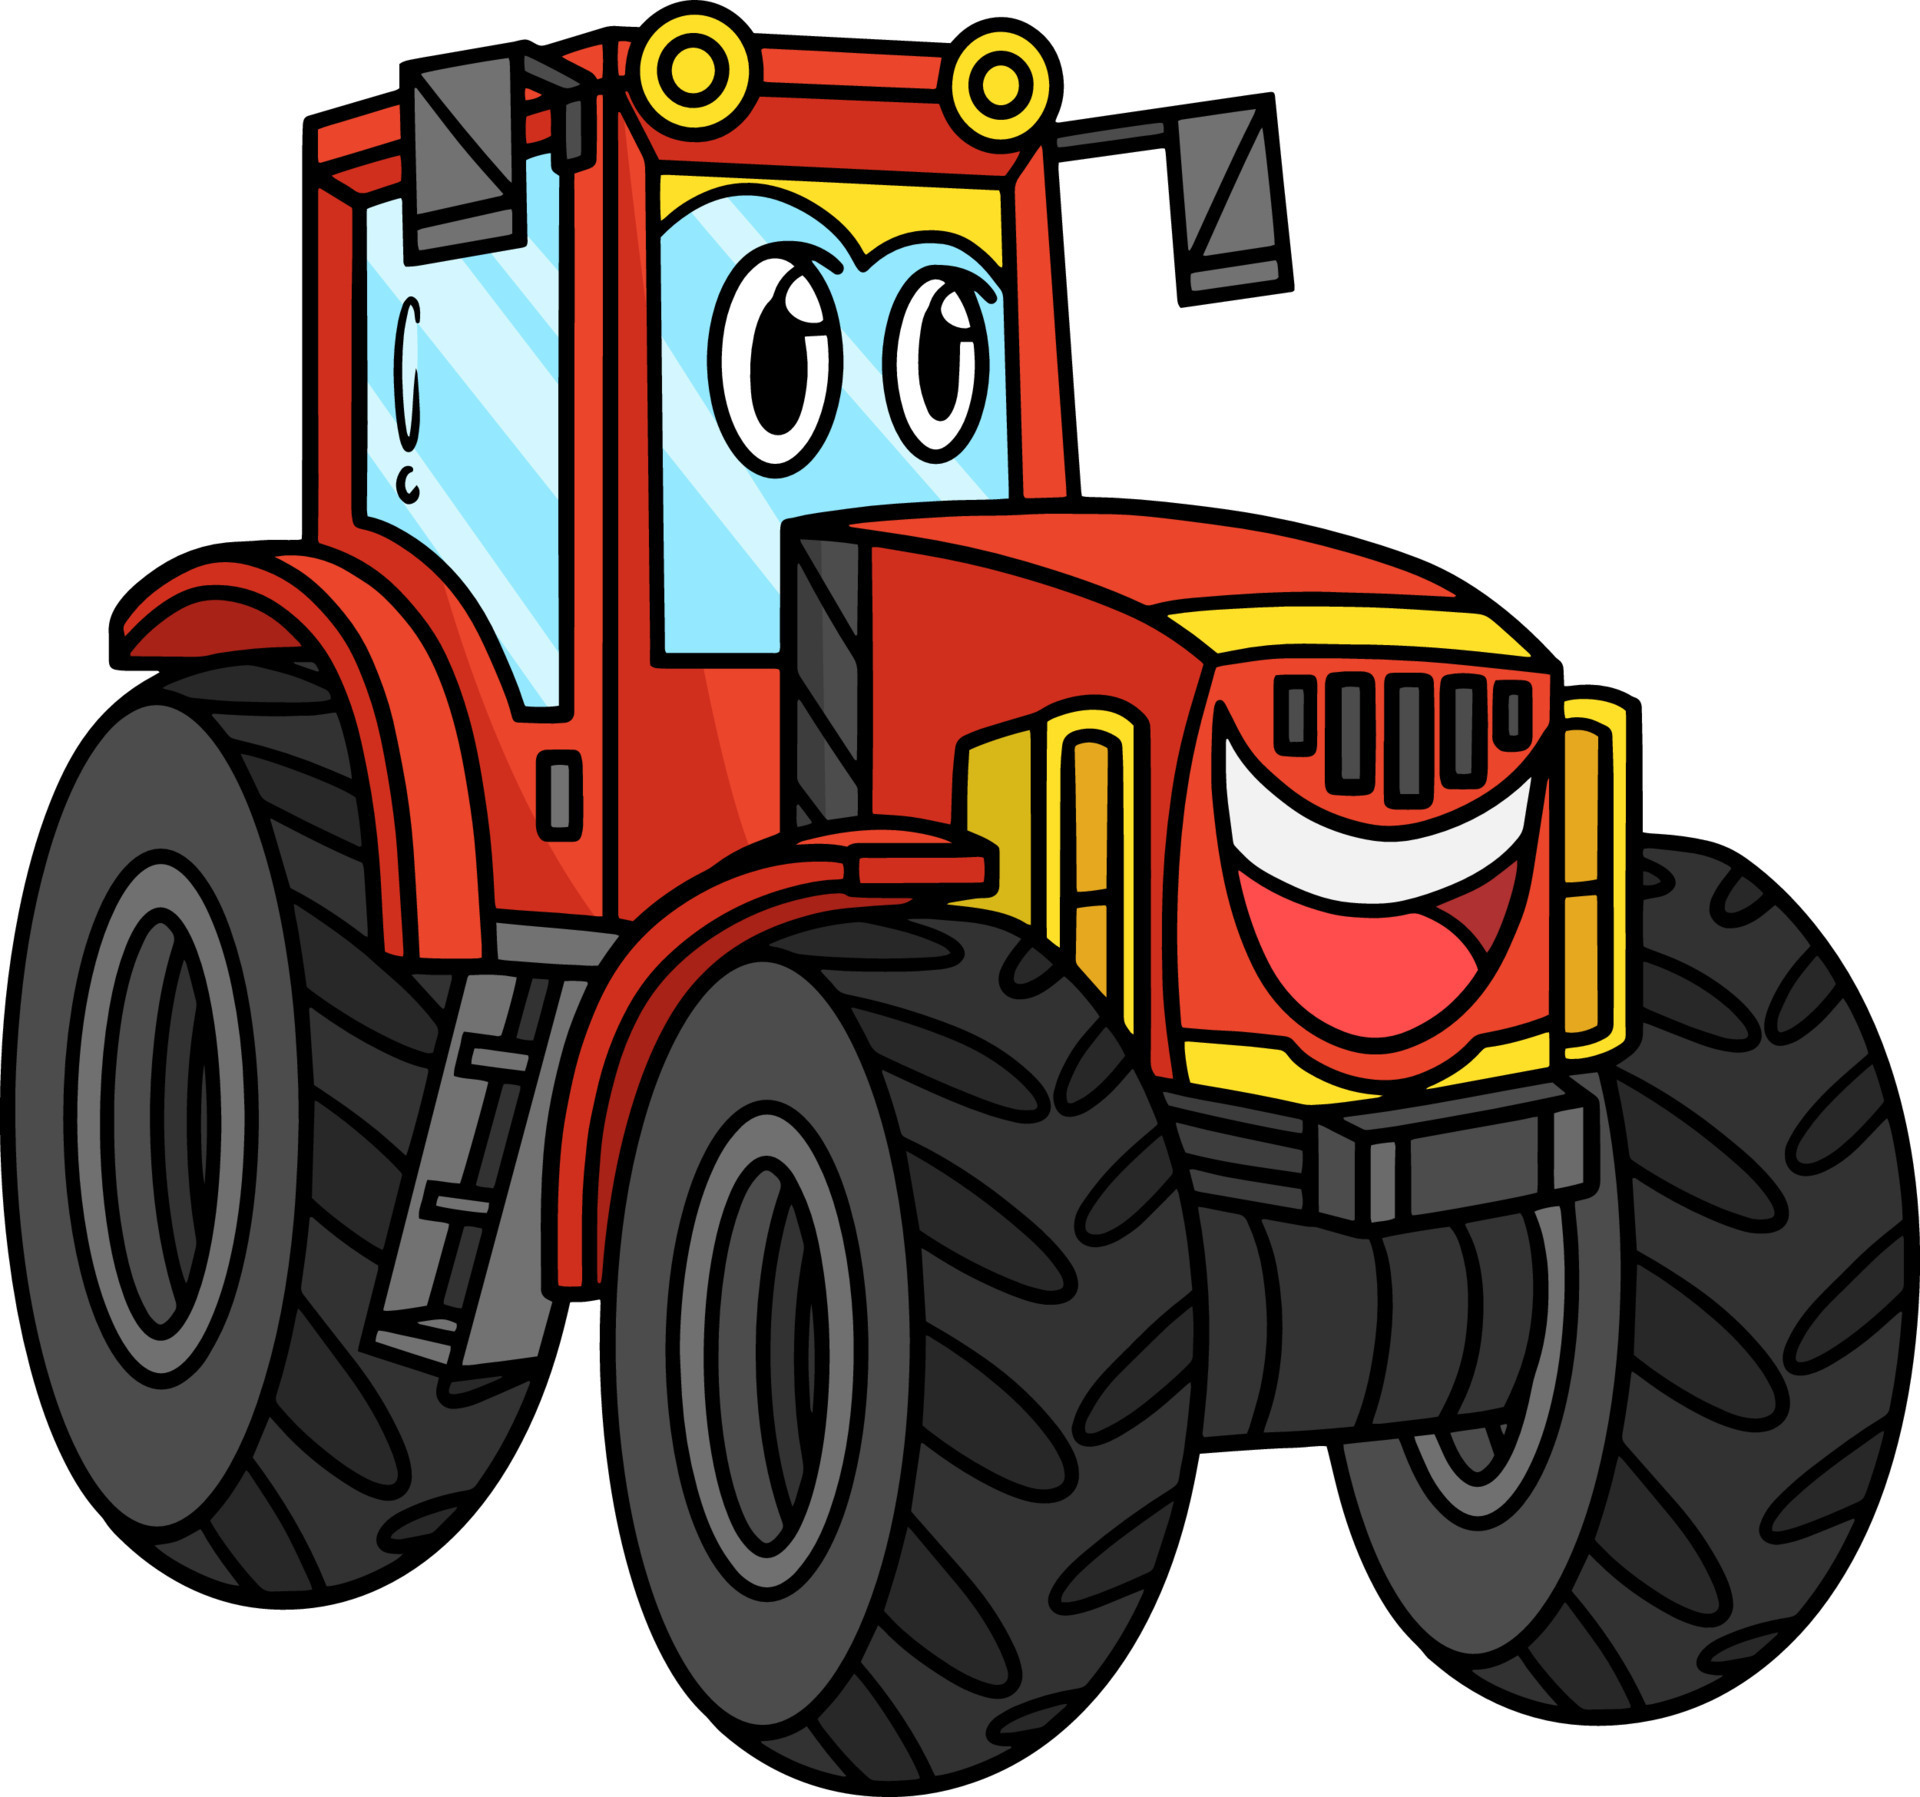 trator desenho animado personagem mascote para agricultura, veículo,  crianças livro. vetor gráfico. 27504559 Vetor no Vecteezy